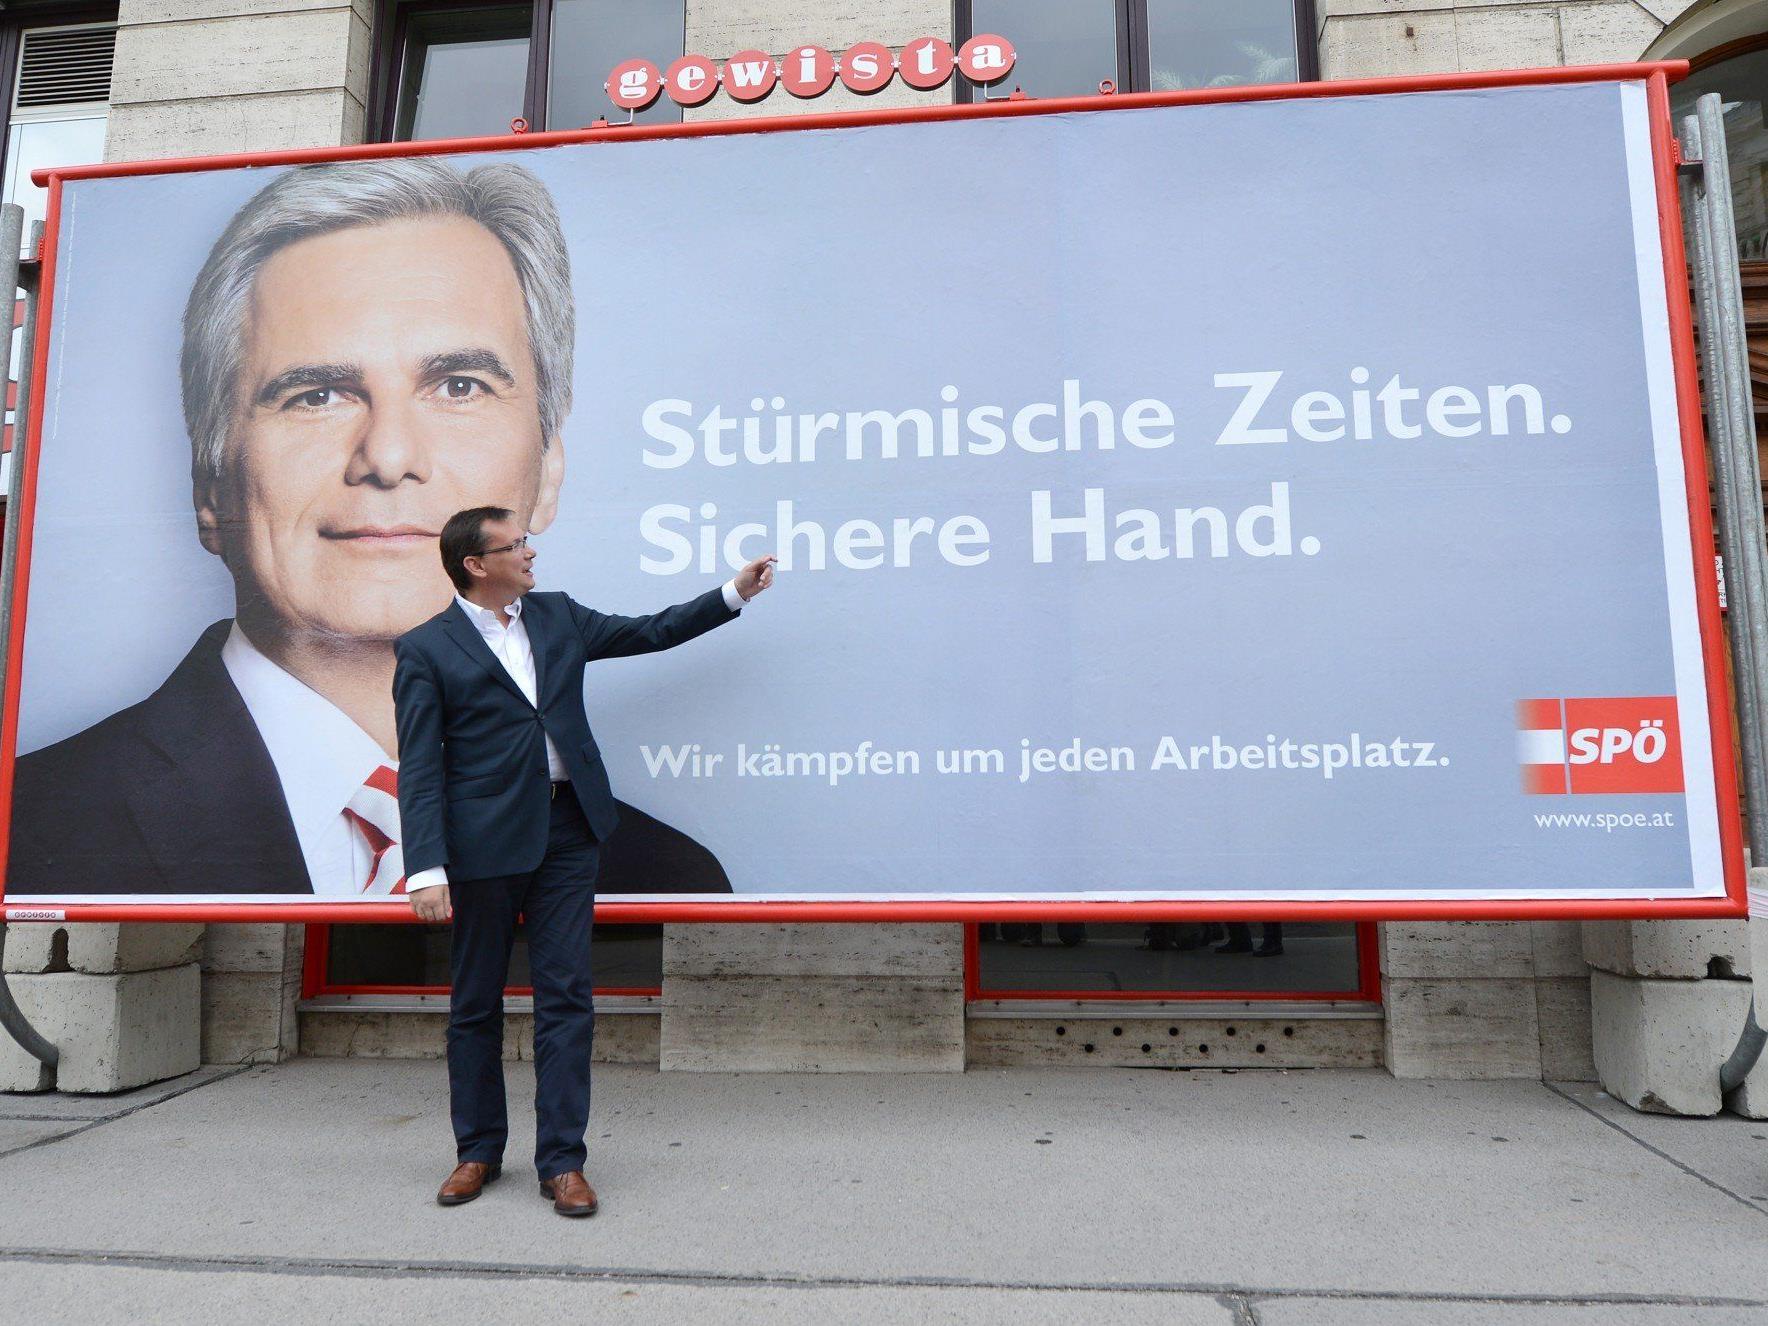 Klare Werbung für die SPÖ? - Experten sind sich nicht einig